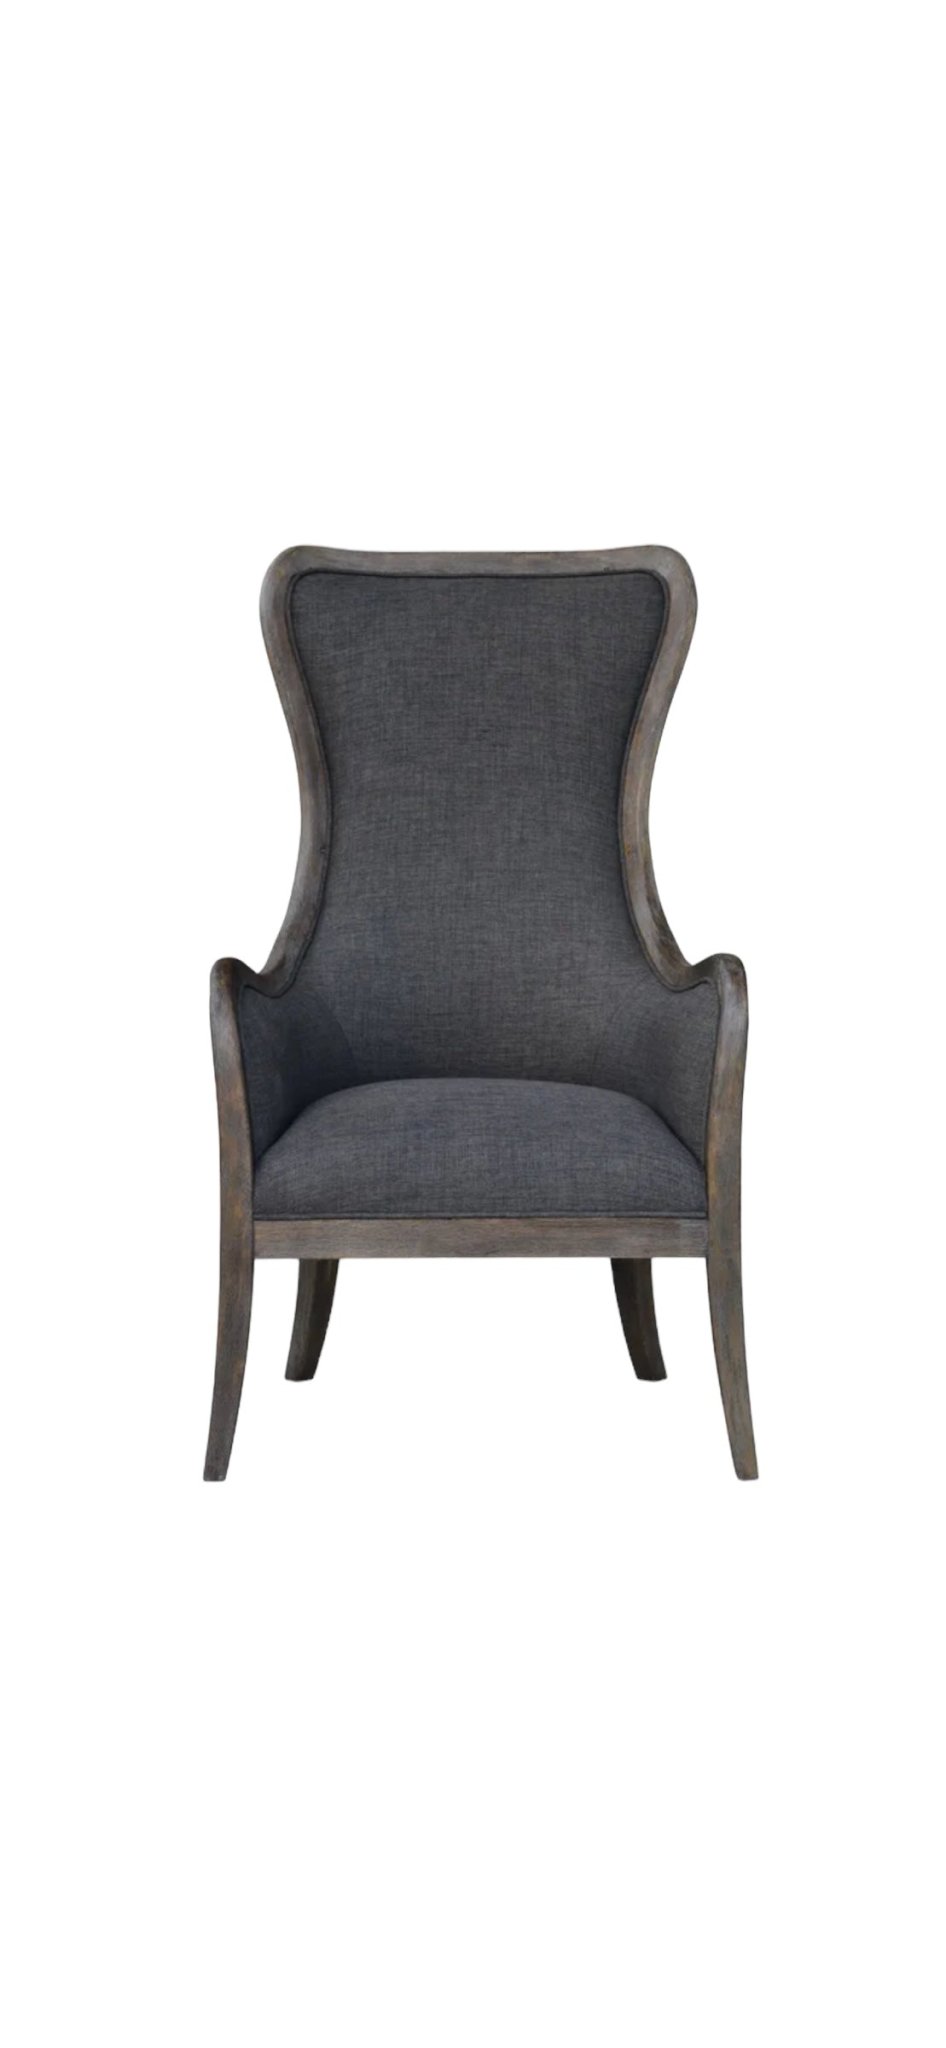 Charleston Chair - The Furnishery